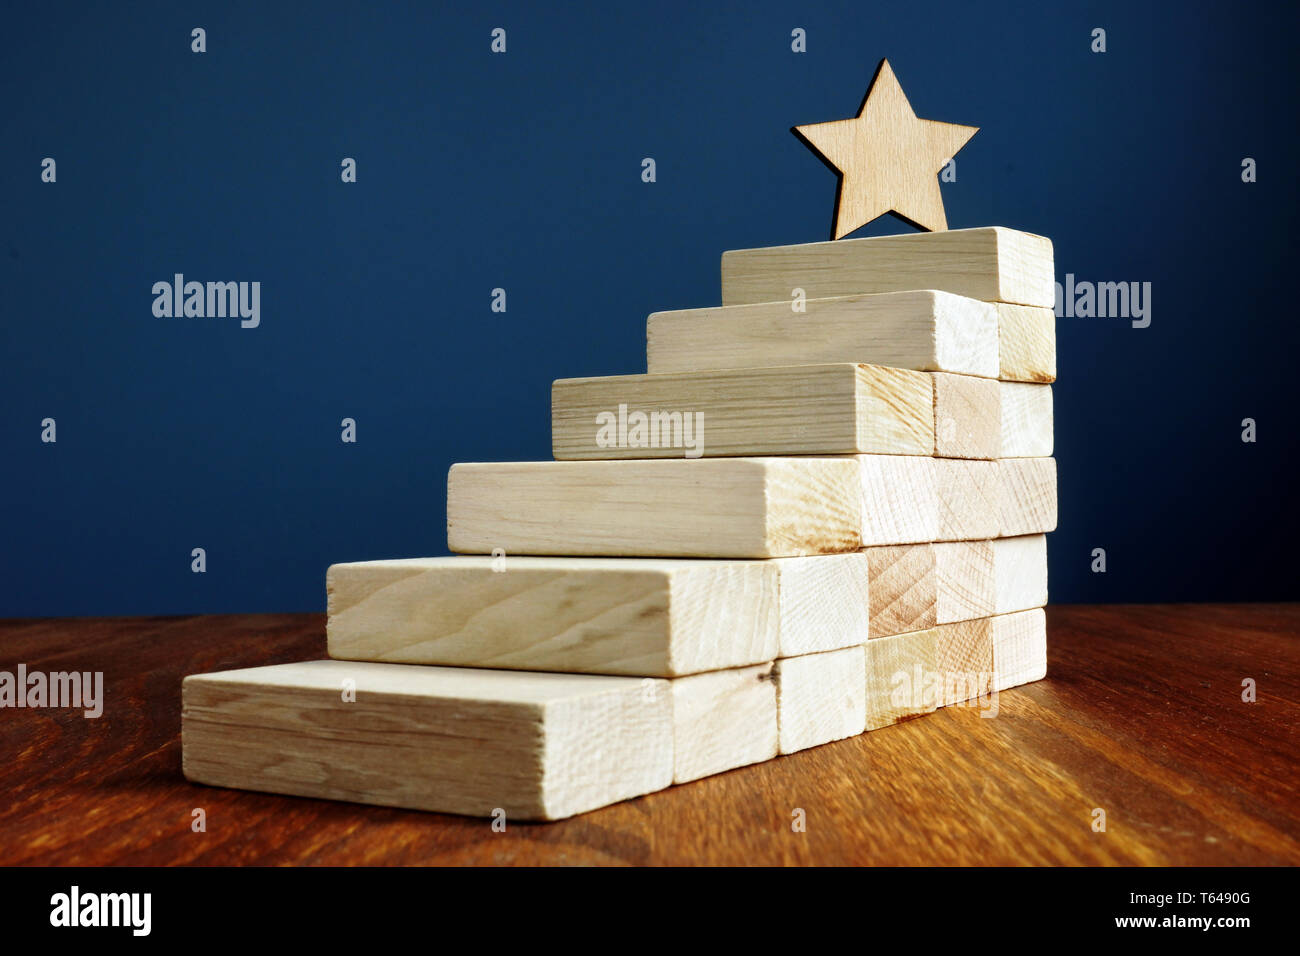 Impostazione obiettivo e il conseguimento degli obiettivi. Stella e scale in legno. Foto Stock